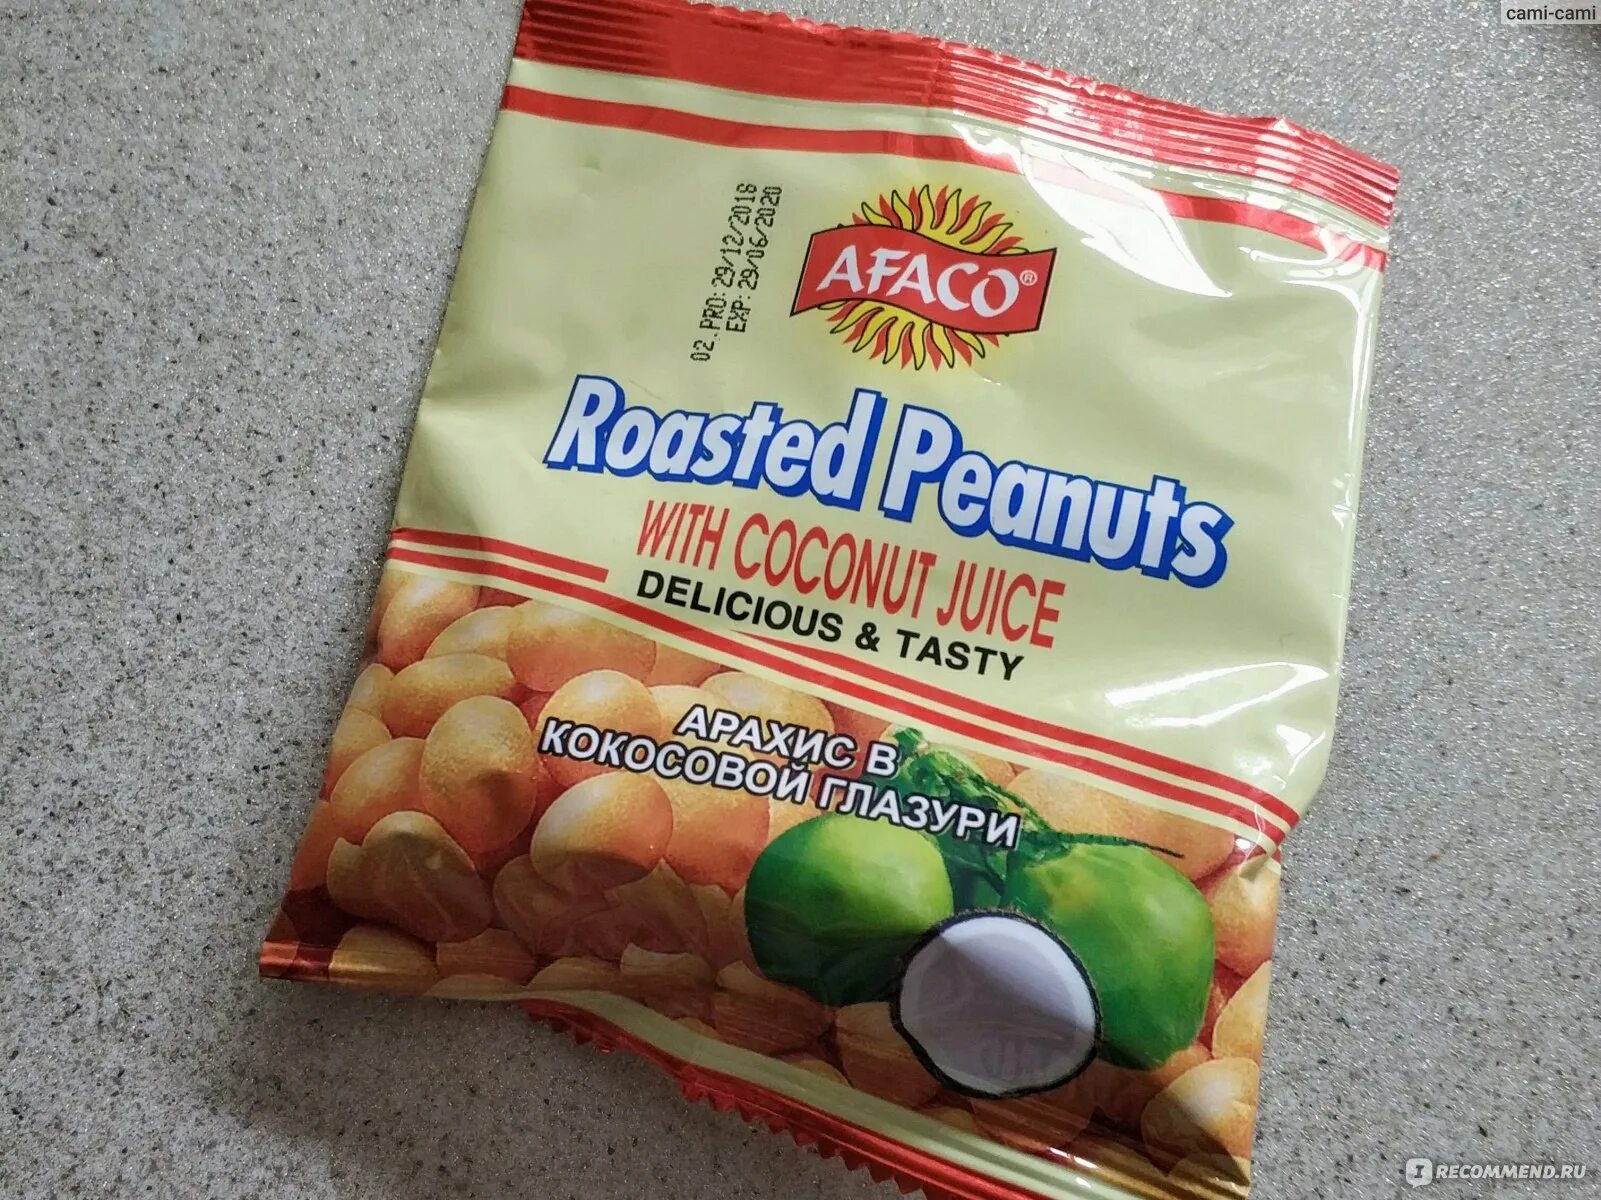 Арахис в кокосовой глазури в 2000. Арахис Афако в кокосовой глазури. Арахис жаренный кокосовой глозури. Сладкий арахис в кокосовой глазури.